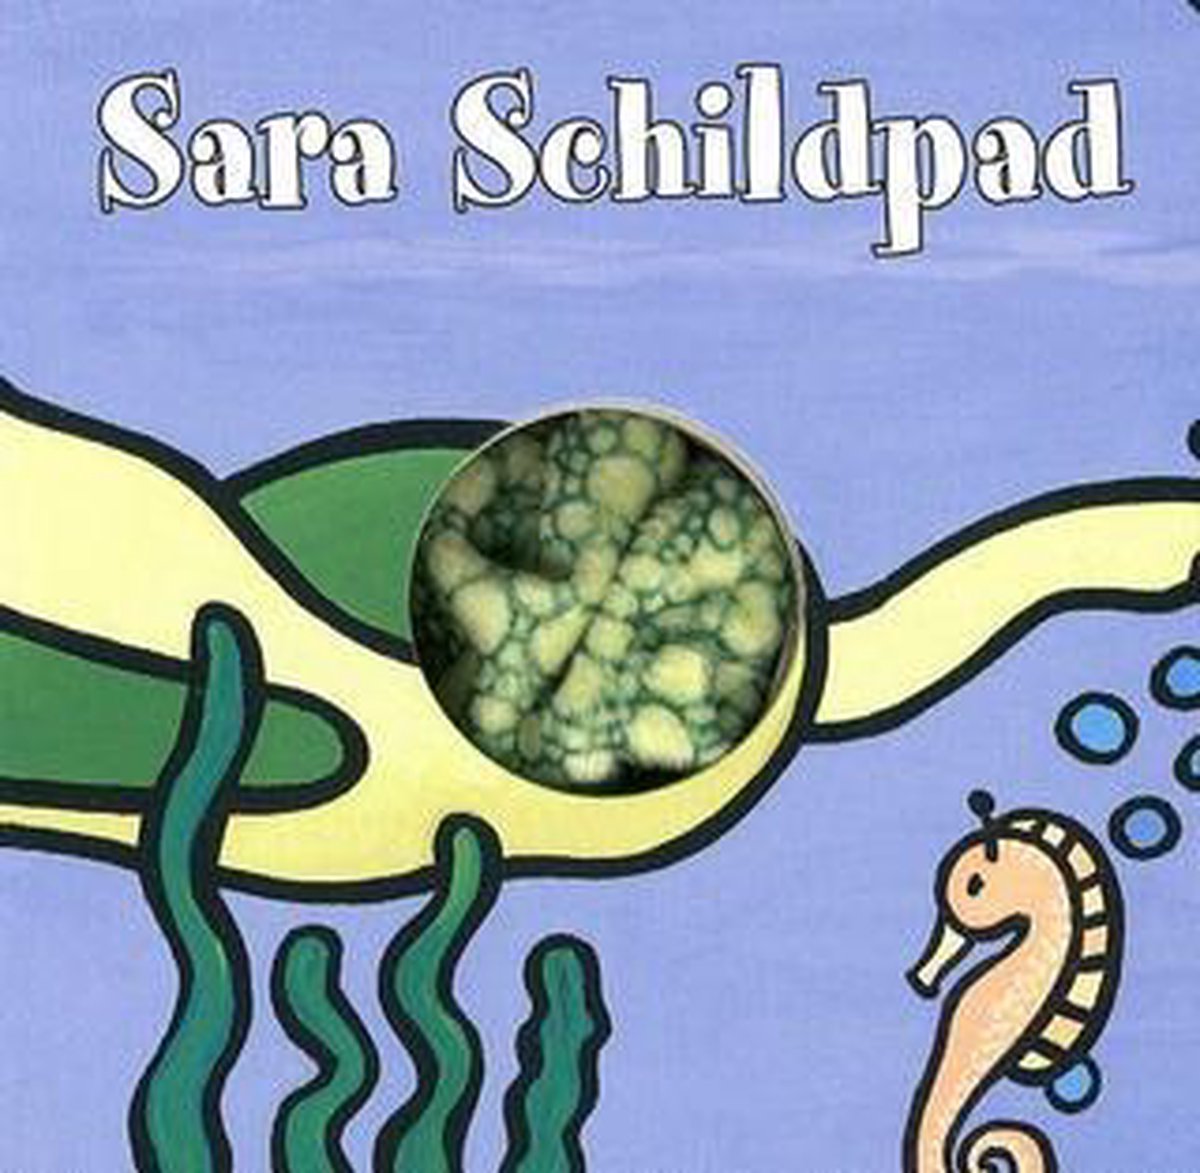 Vingerpopboekje zeevriendjes Zeeschildpad (Sara)